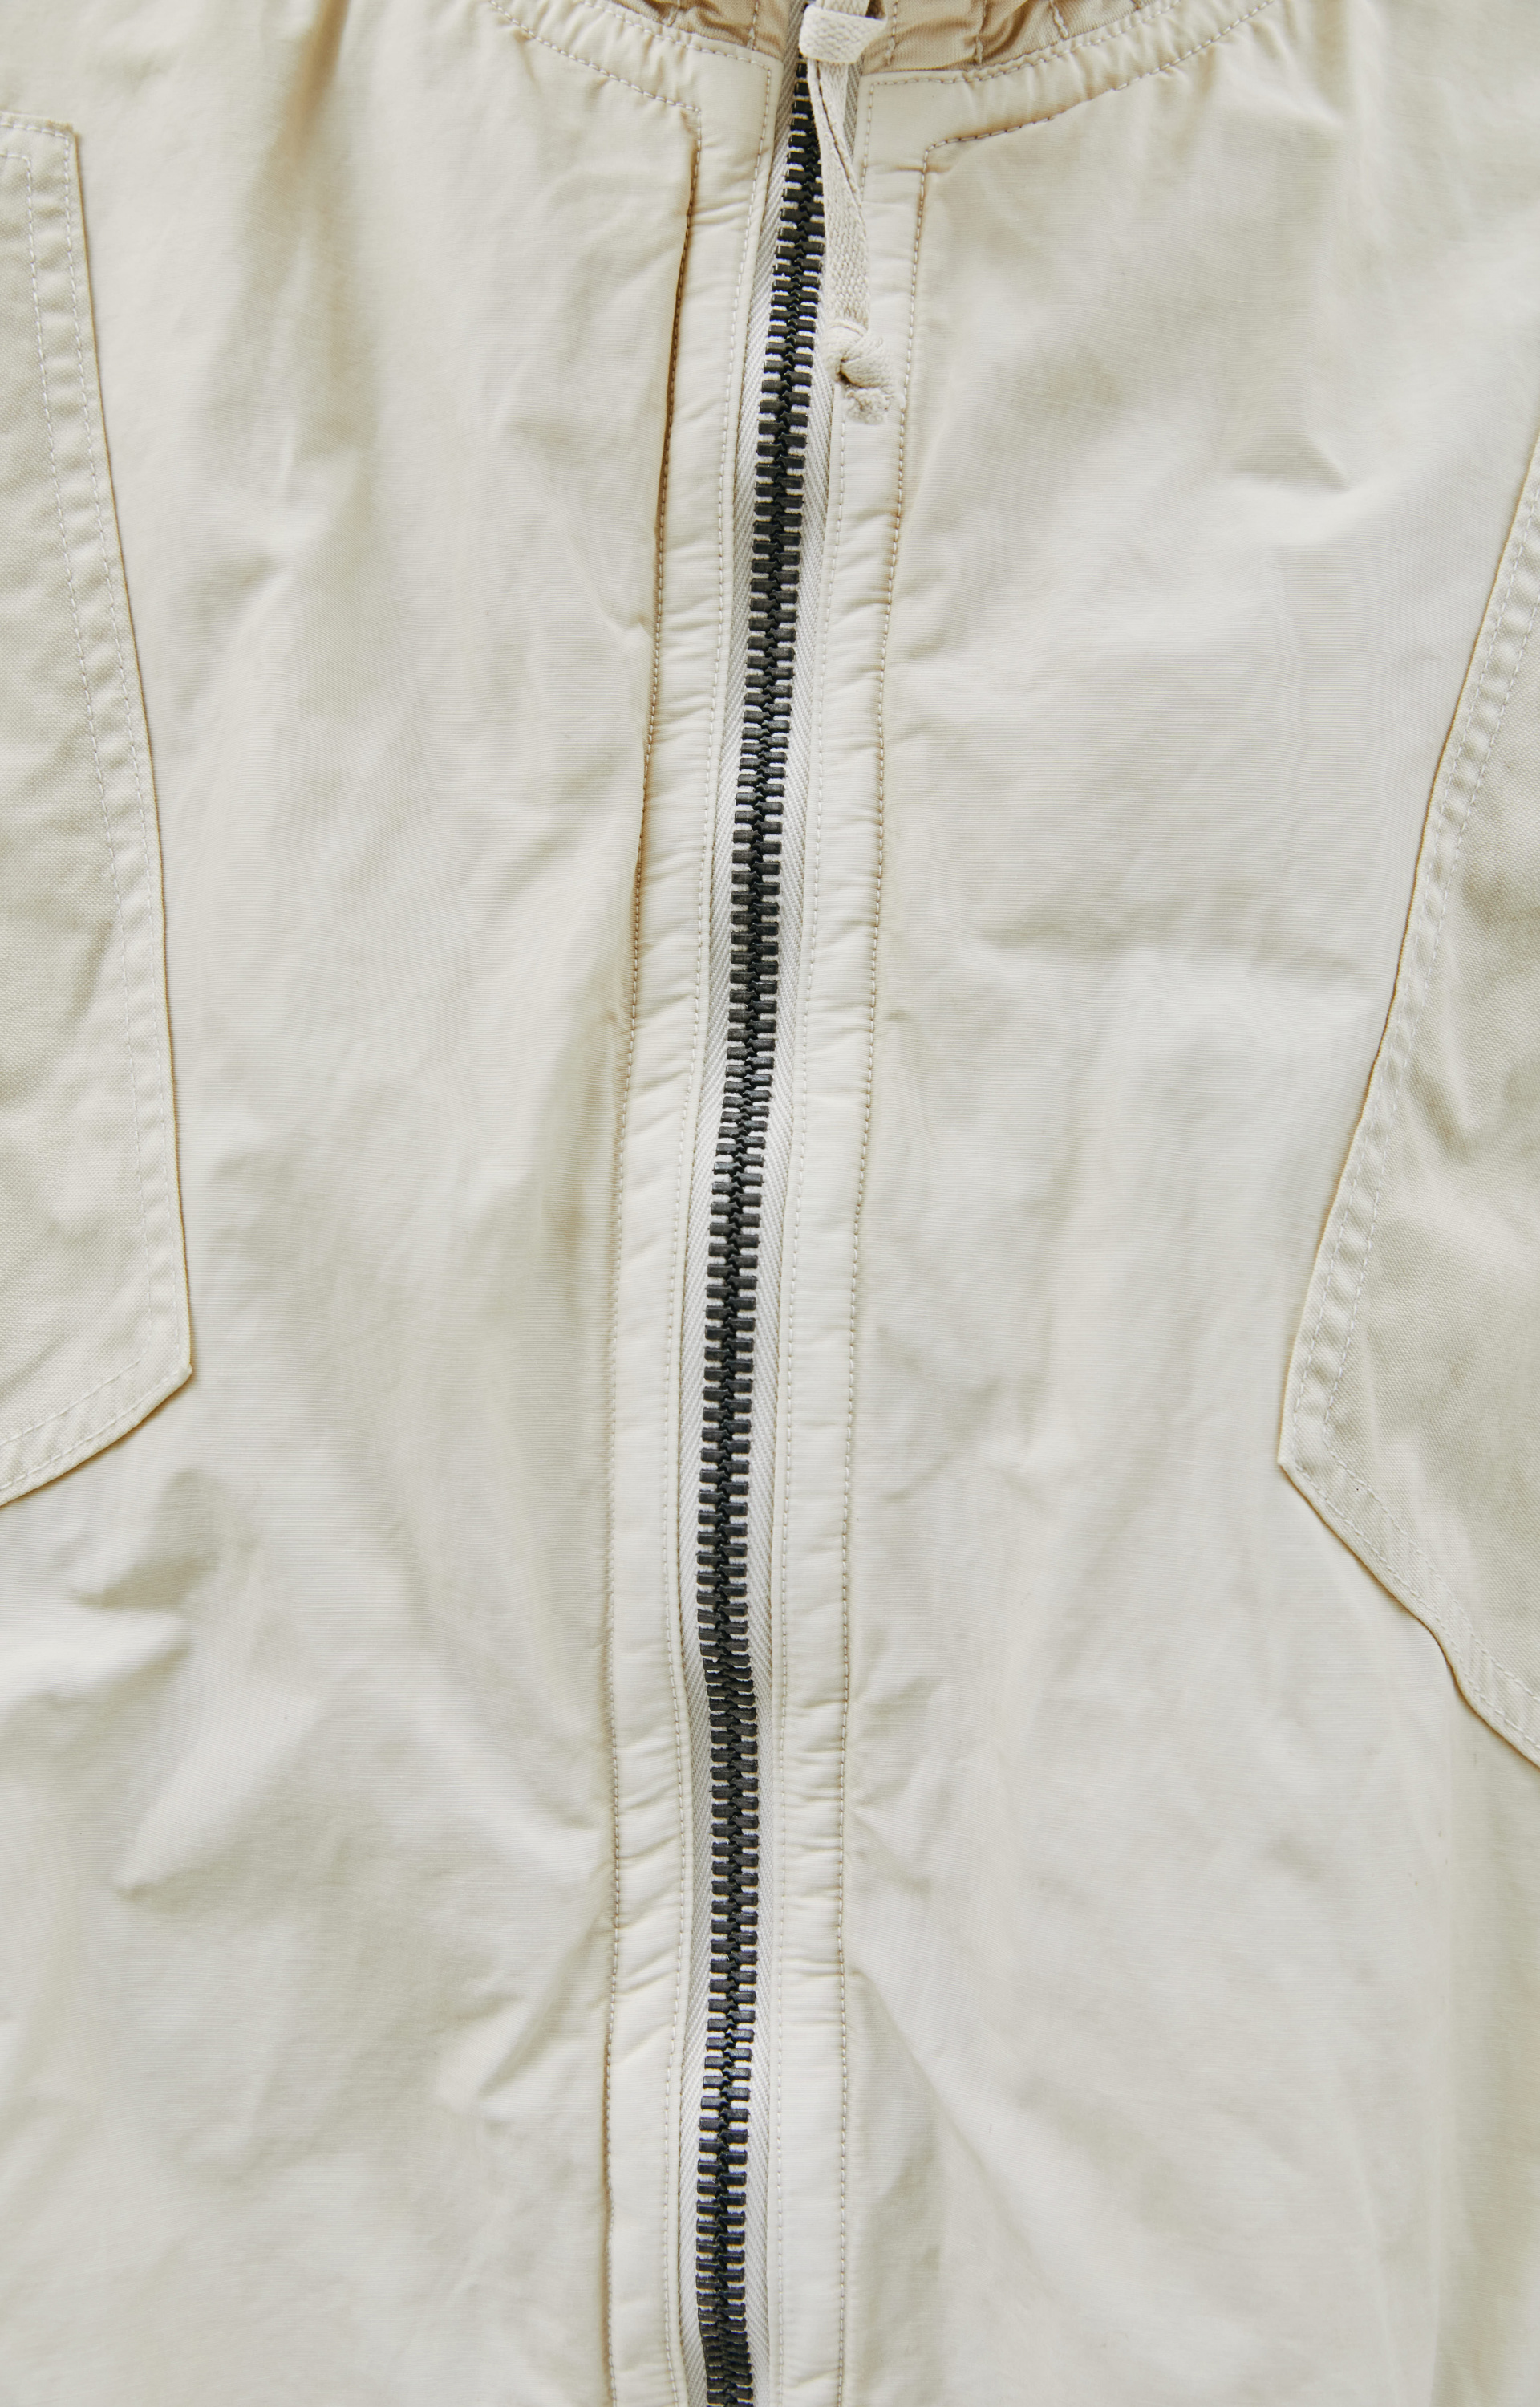 visvim Beige S. A. R. jacket with high collar